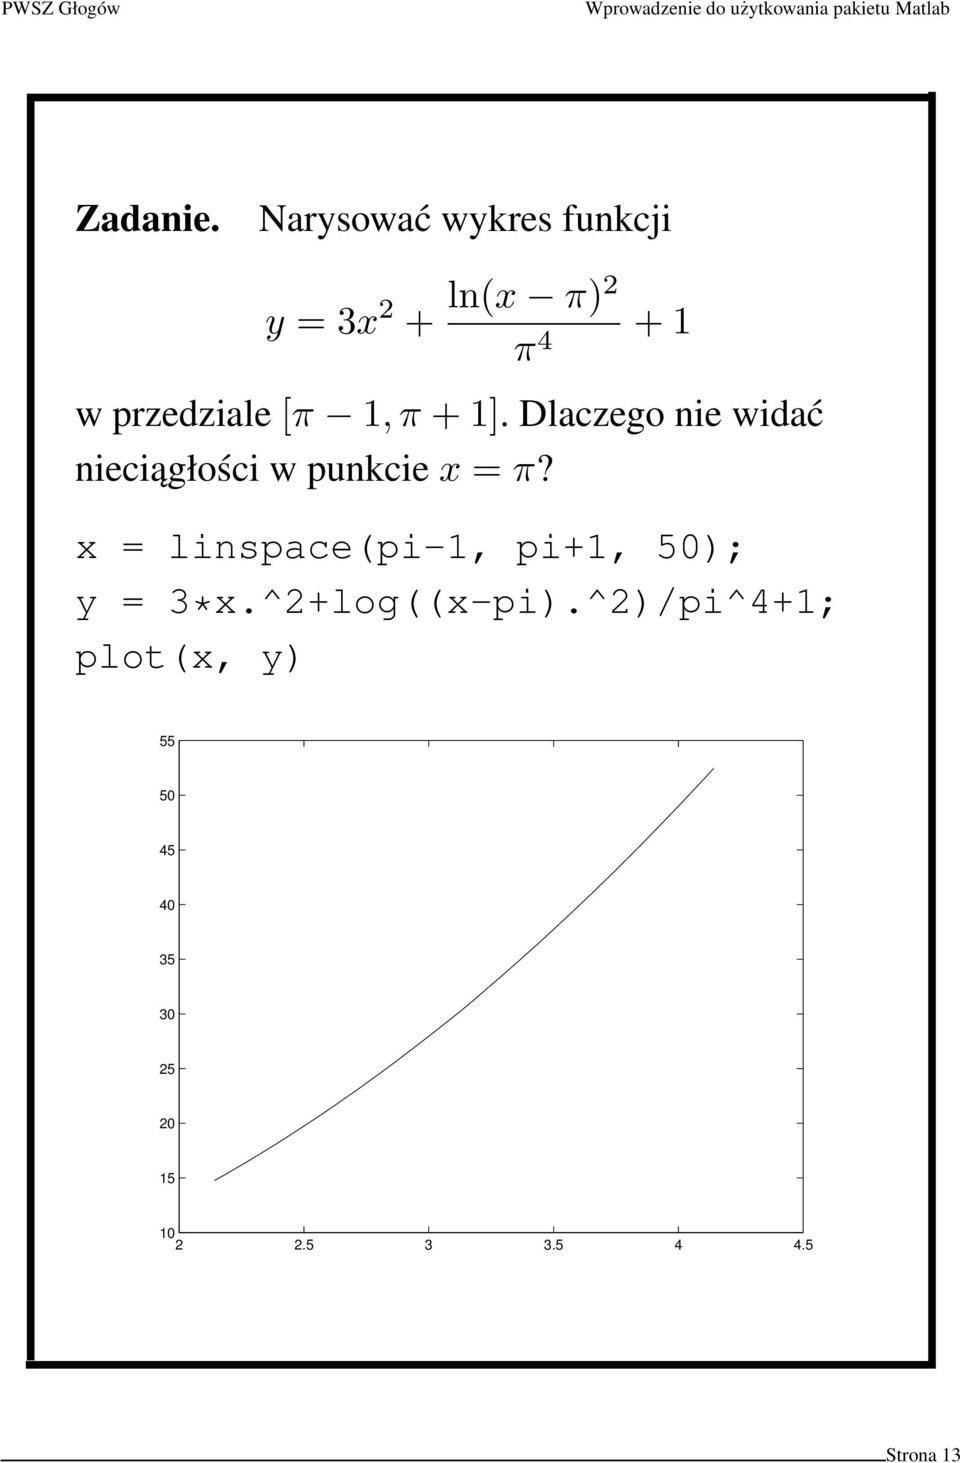 [π 1, π + 1]. Dlaczego nie widać nieciągłości w punkcie x = π?